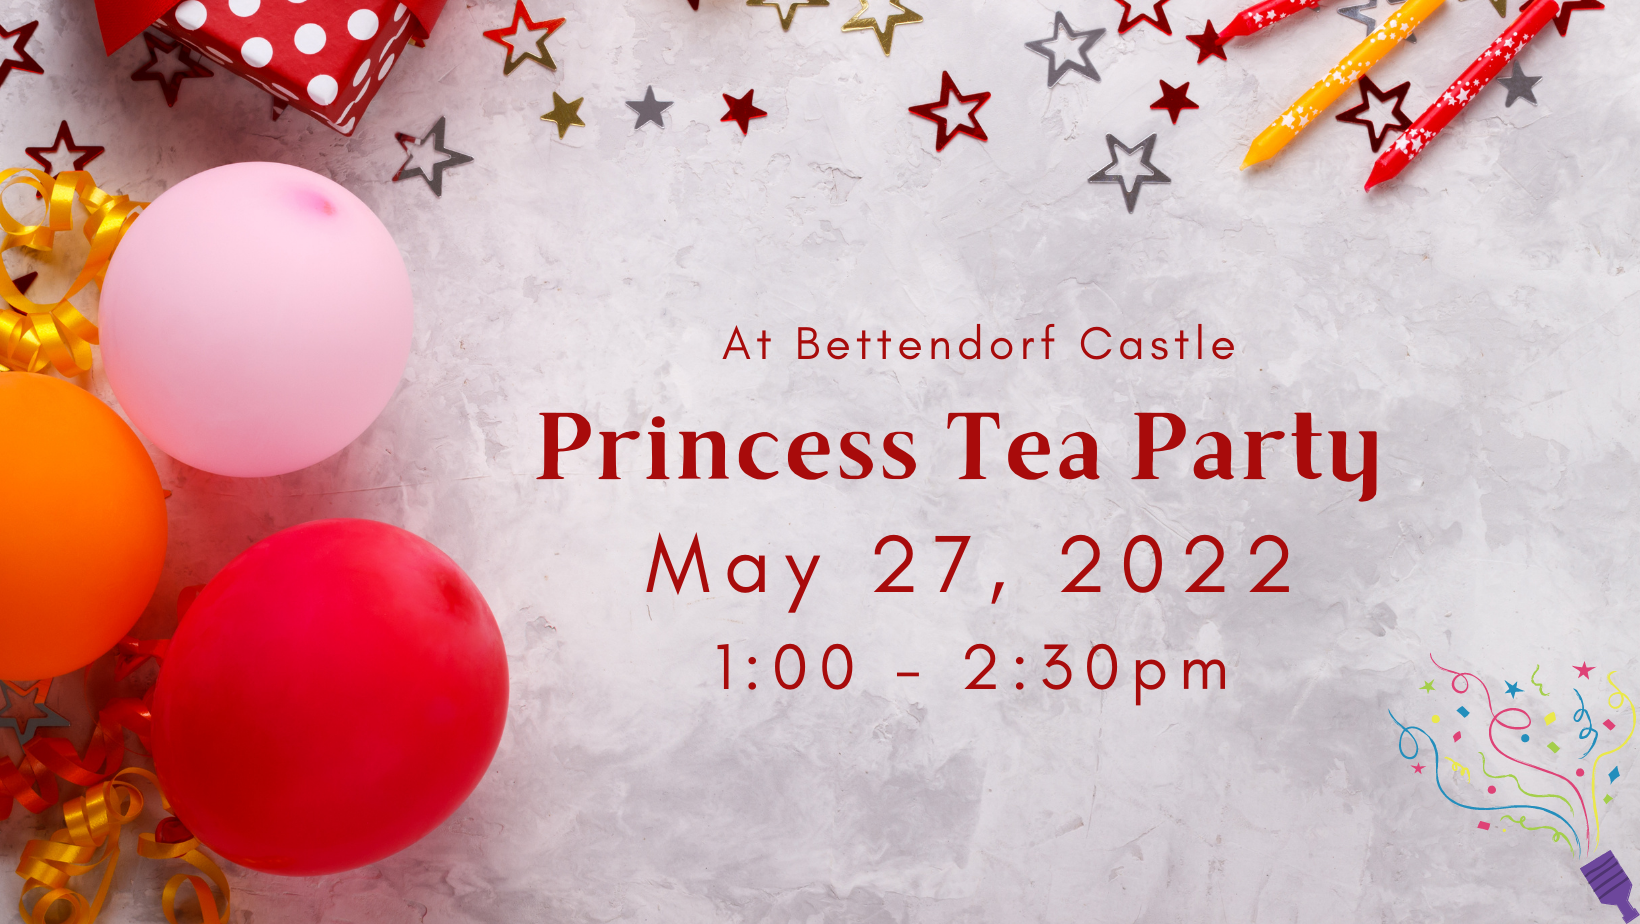 Princess Tea Party at Bettendorf Castle